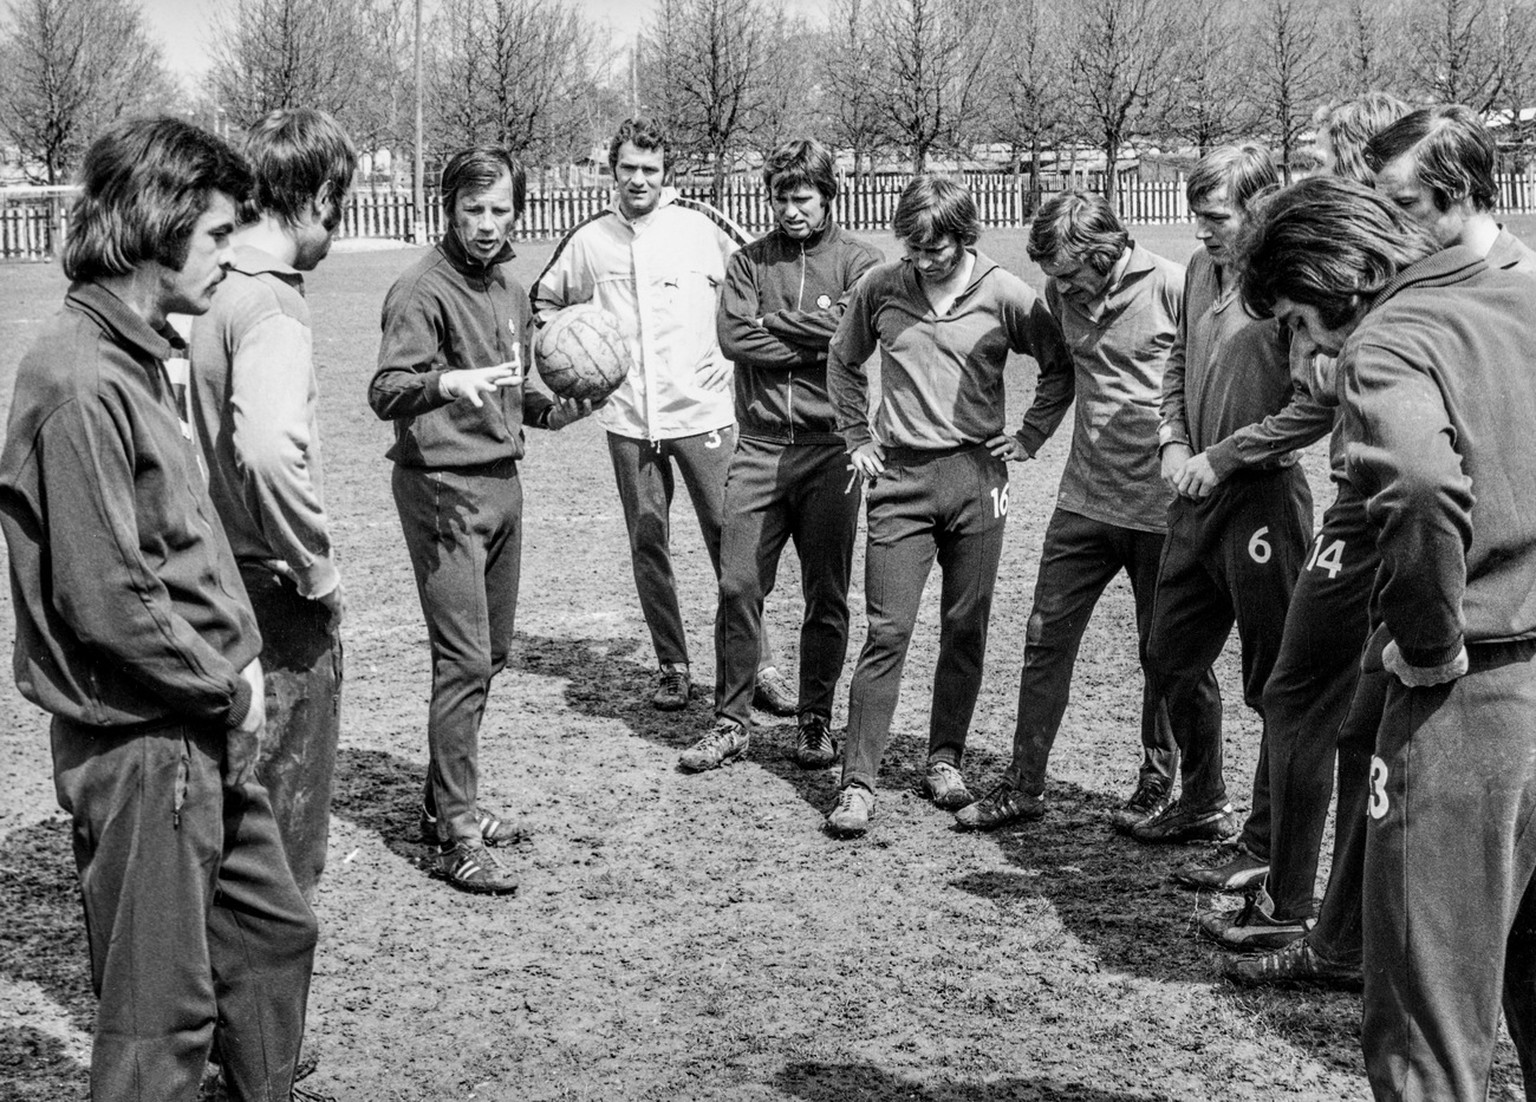 Helmut Benthaus, Dritter von links, Trainer vom FC Basel, instruiert seine Spieler bei einem Training, links aussen, Ottmar Hitzfeld, aufgenommen am 17. April 1973 in Basel. (KEYSTONE/Str)